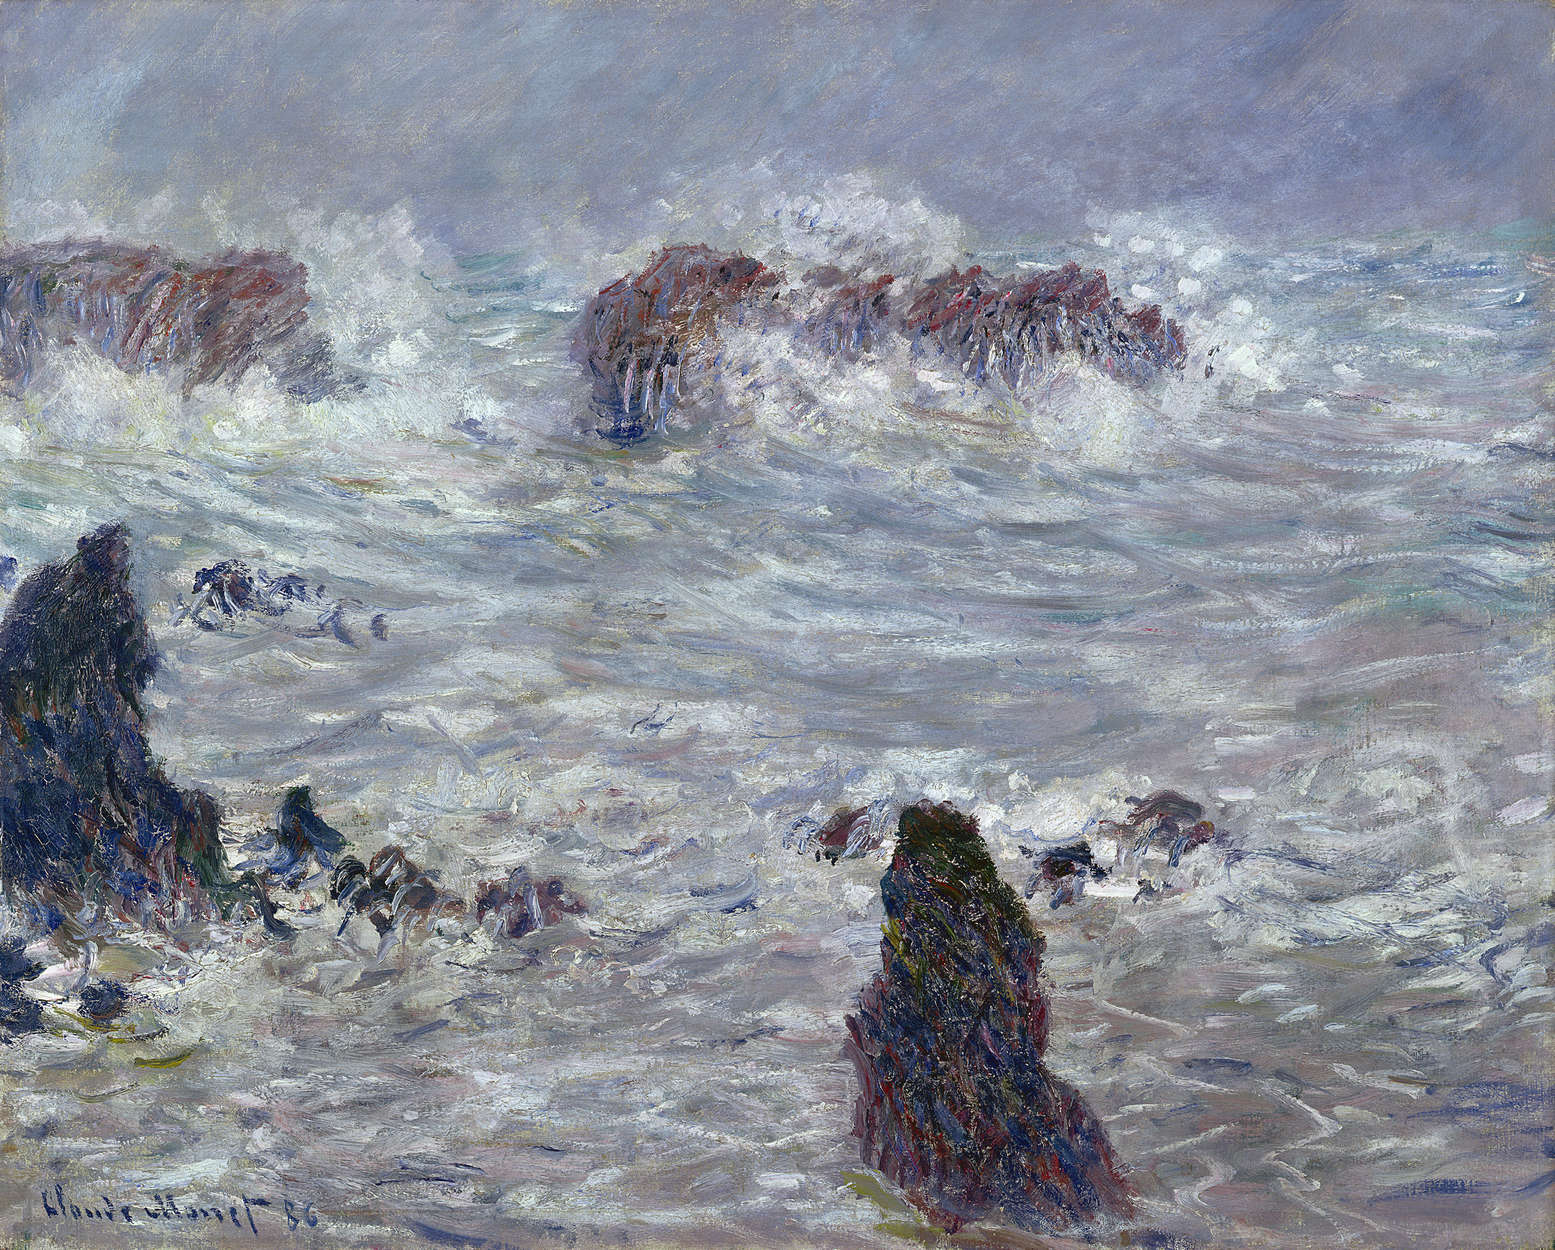             Mural "Tormenta frente a la costa" de Claude Monet
        